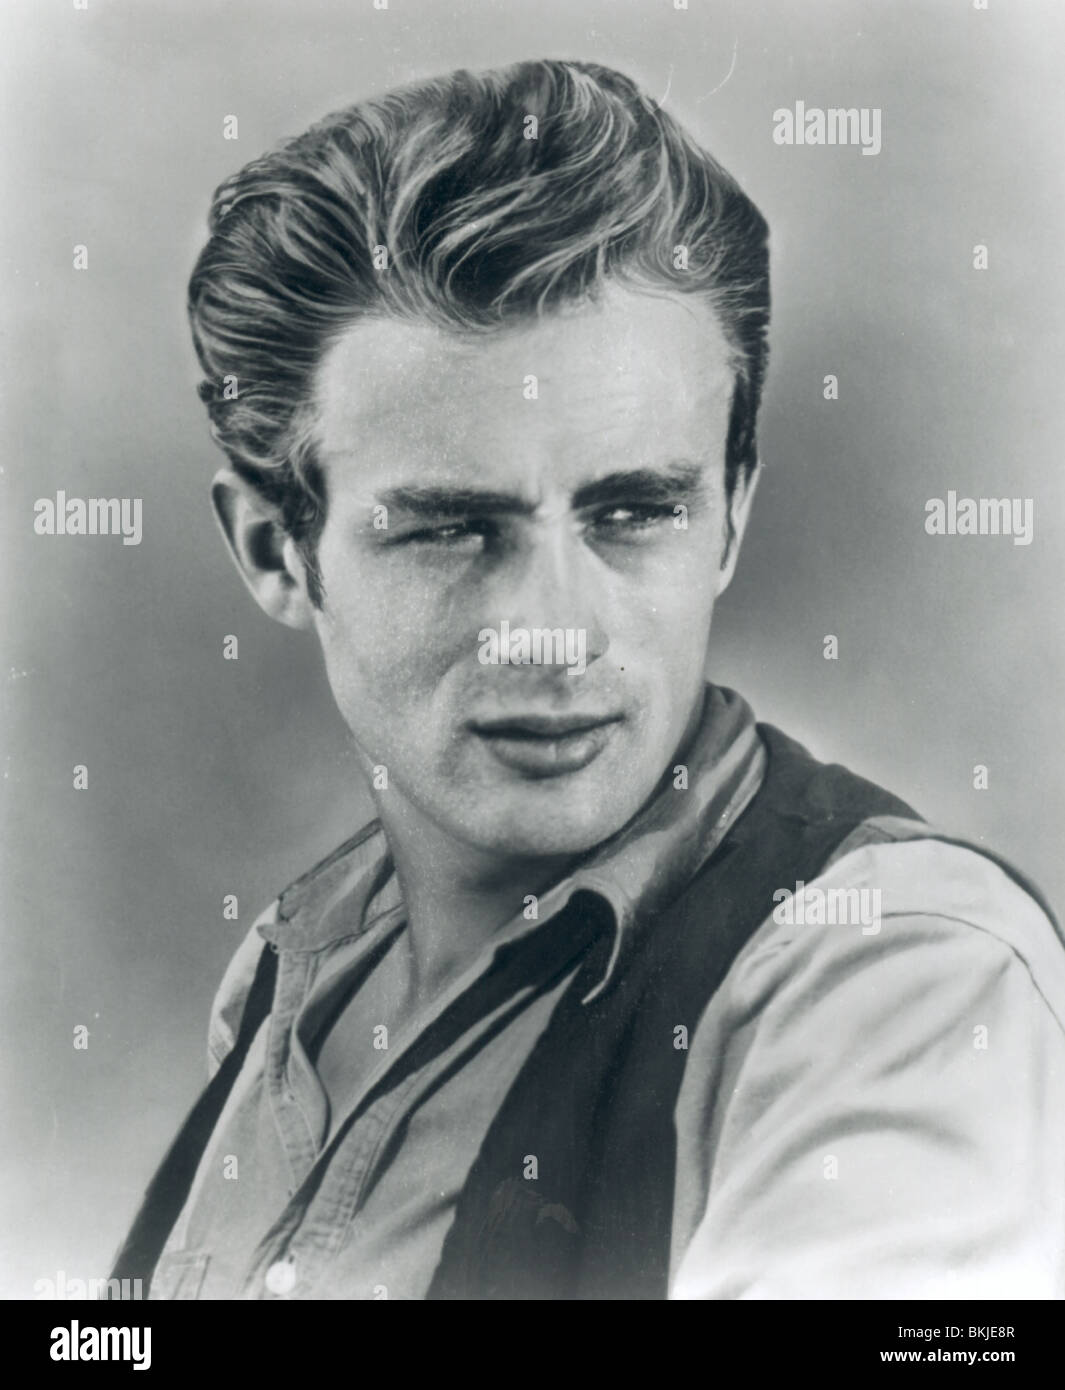 GIANT -1956 JAMES DEAN Stock Photo